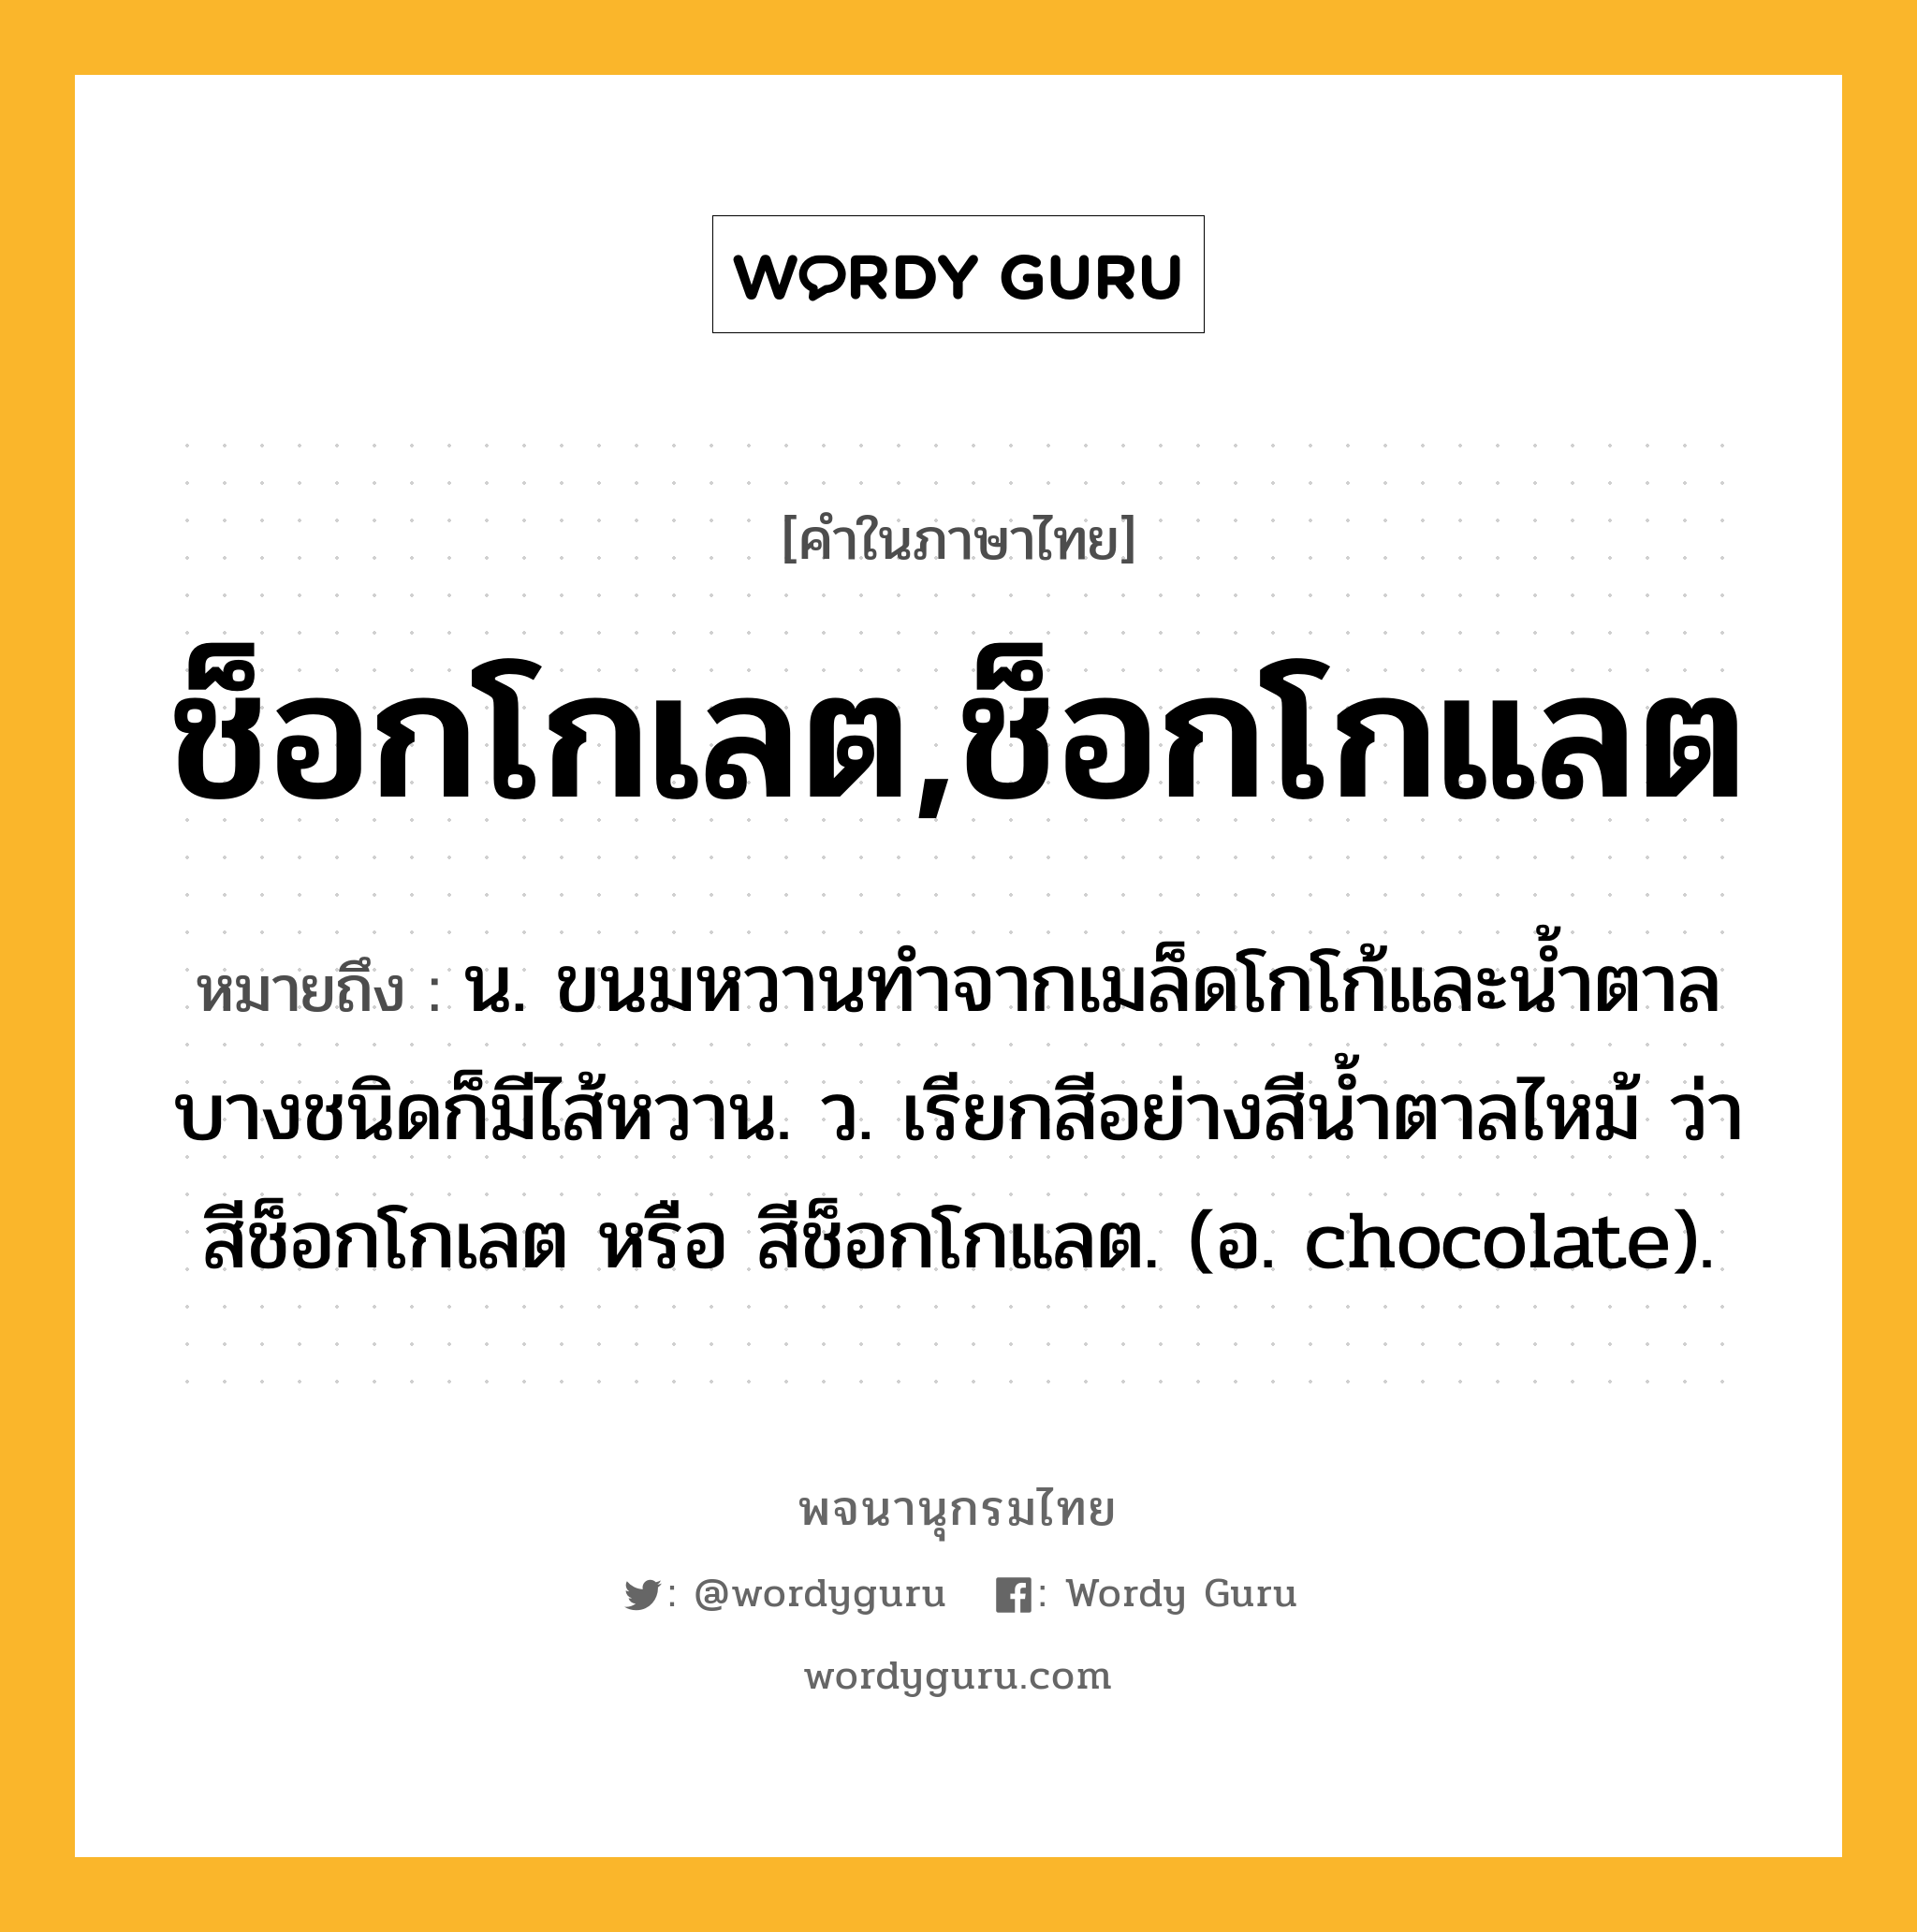 ช็อกโกเลต,ช็อกโกแลต หมายถึงอะไร?, คำในภาษาไทย ช็อกโกเลต,ช็อกโกแลต หมายถึง น. ขนมหวานทําจากเมล็ดโกโก้และนํ้าตาล บางชนิดก็มีไส้หวาน. ว. เรียกสีอย่างสีนํ้าตาลไหม้ ว่า สีช็อกโกเลต หรือ สีช็อกโกแลต. (อ. chocolate).